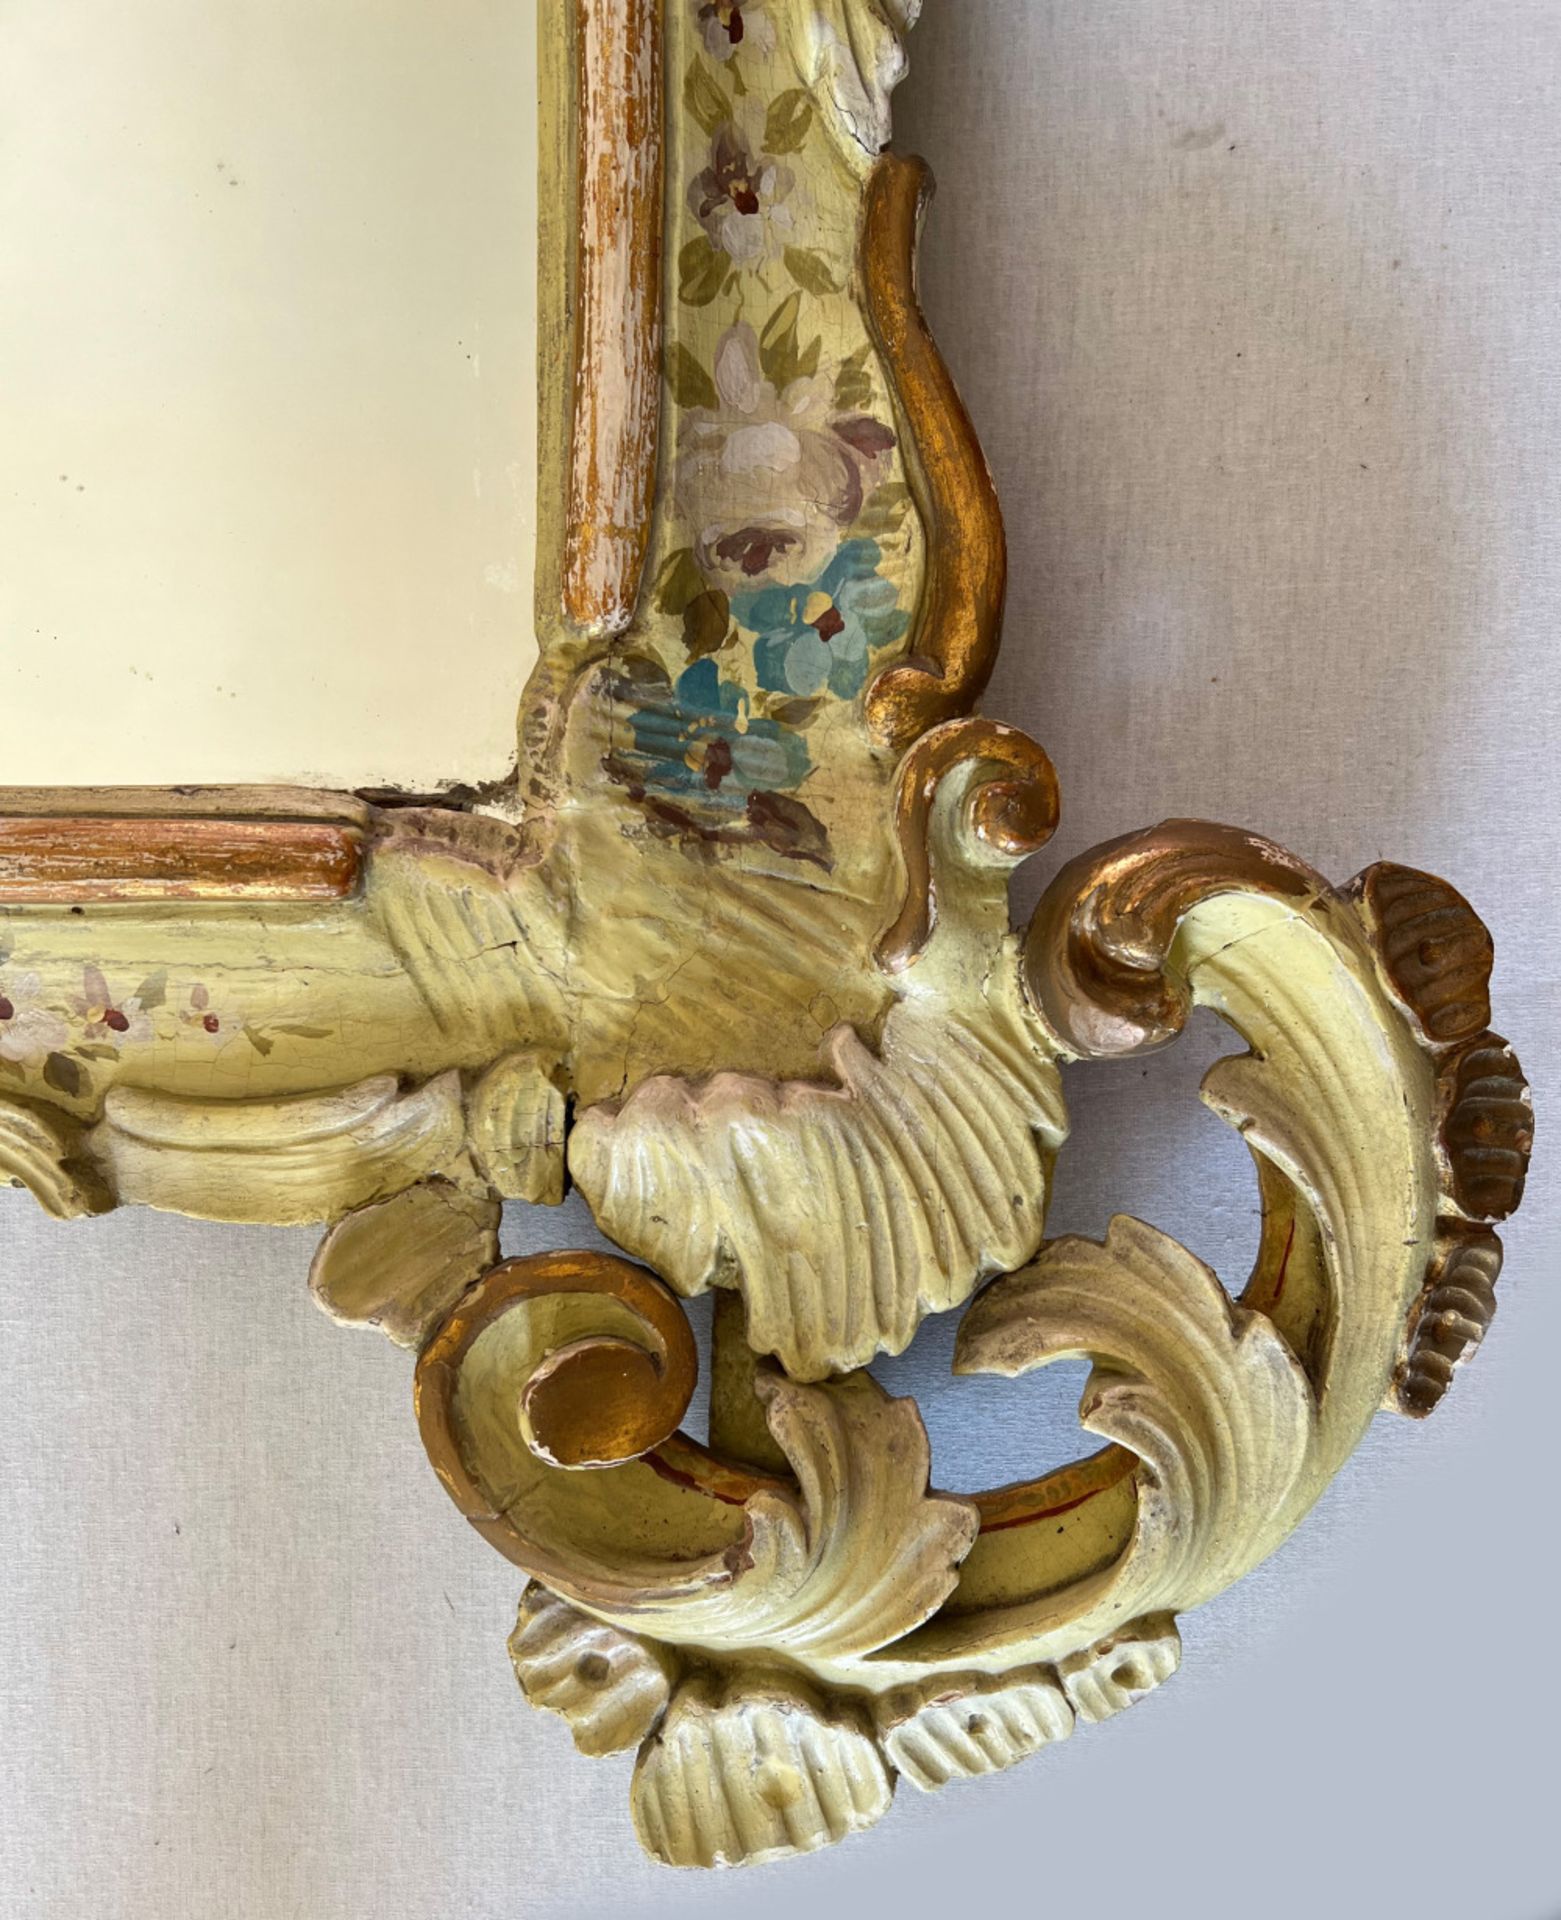 Barockspiegel mit Floralmalerei, Holz, farbig gefasst, Schlossmöbel, Altersspuren, 190 x 107 cm. - Bild 2 aus 11